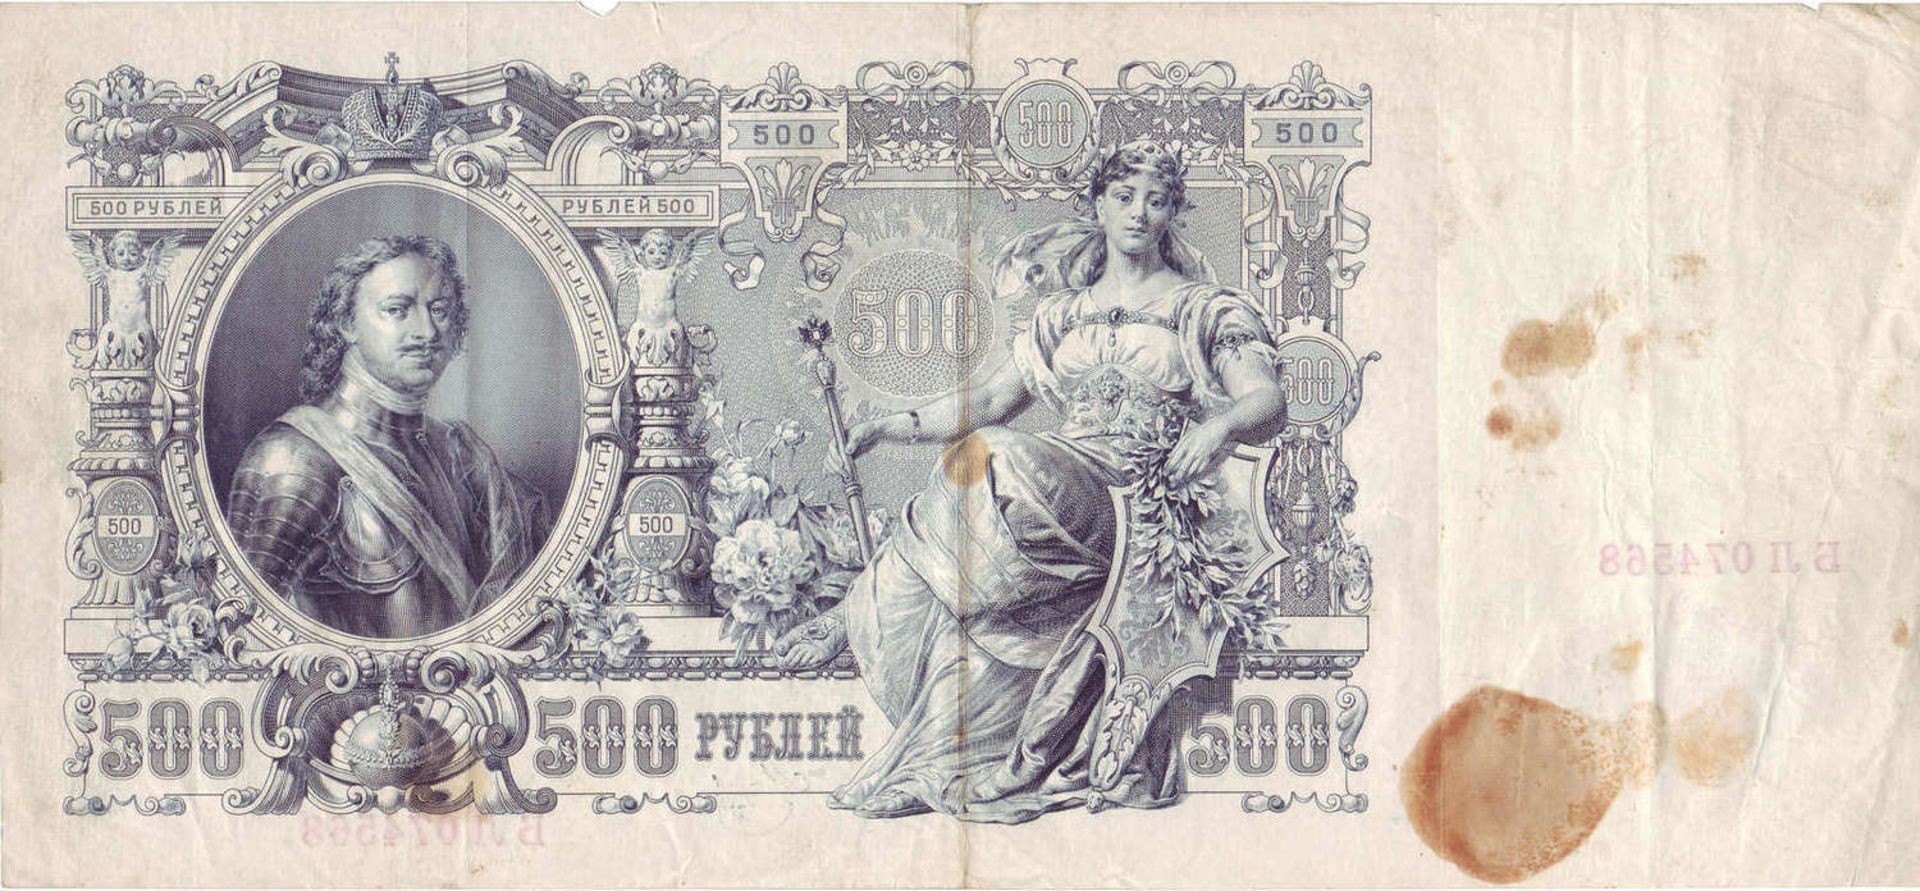 Russland Zarenreich 1910/12, 1 x 100 Rubel und 1 x 500 Rubel Banknote. Mit Knick.Russia Tsarist